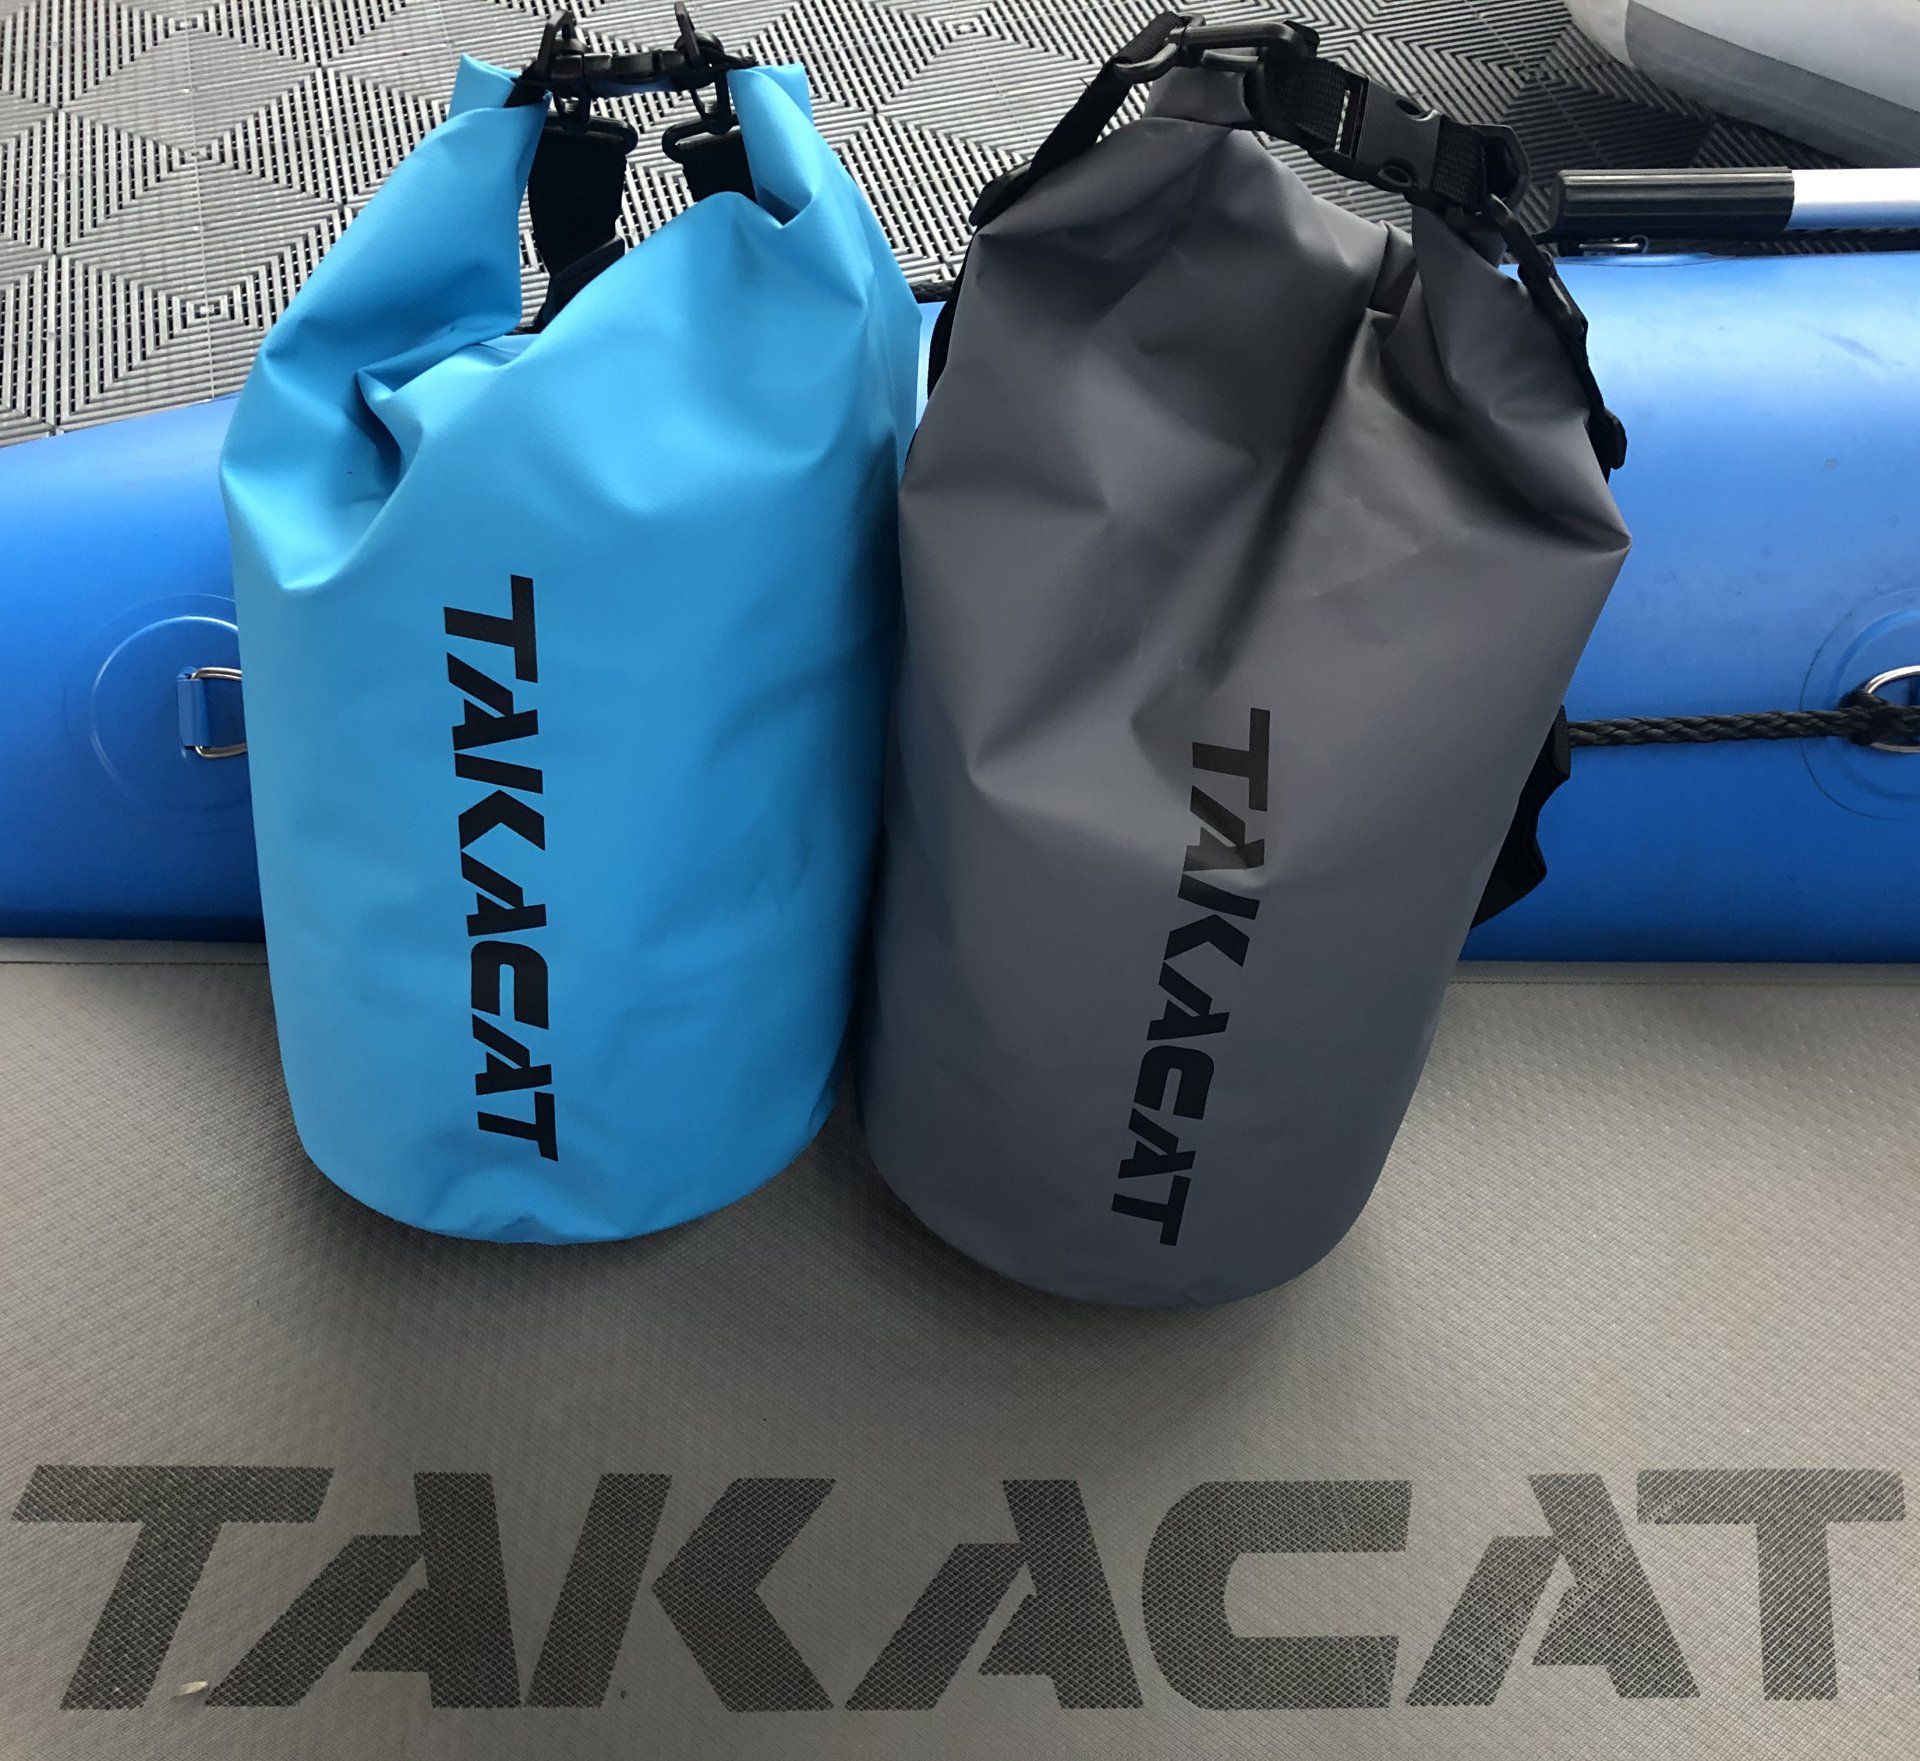 TAKACAT-BAG защищает от дождя, влаги и брызг воды.